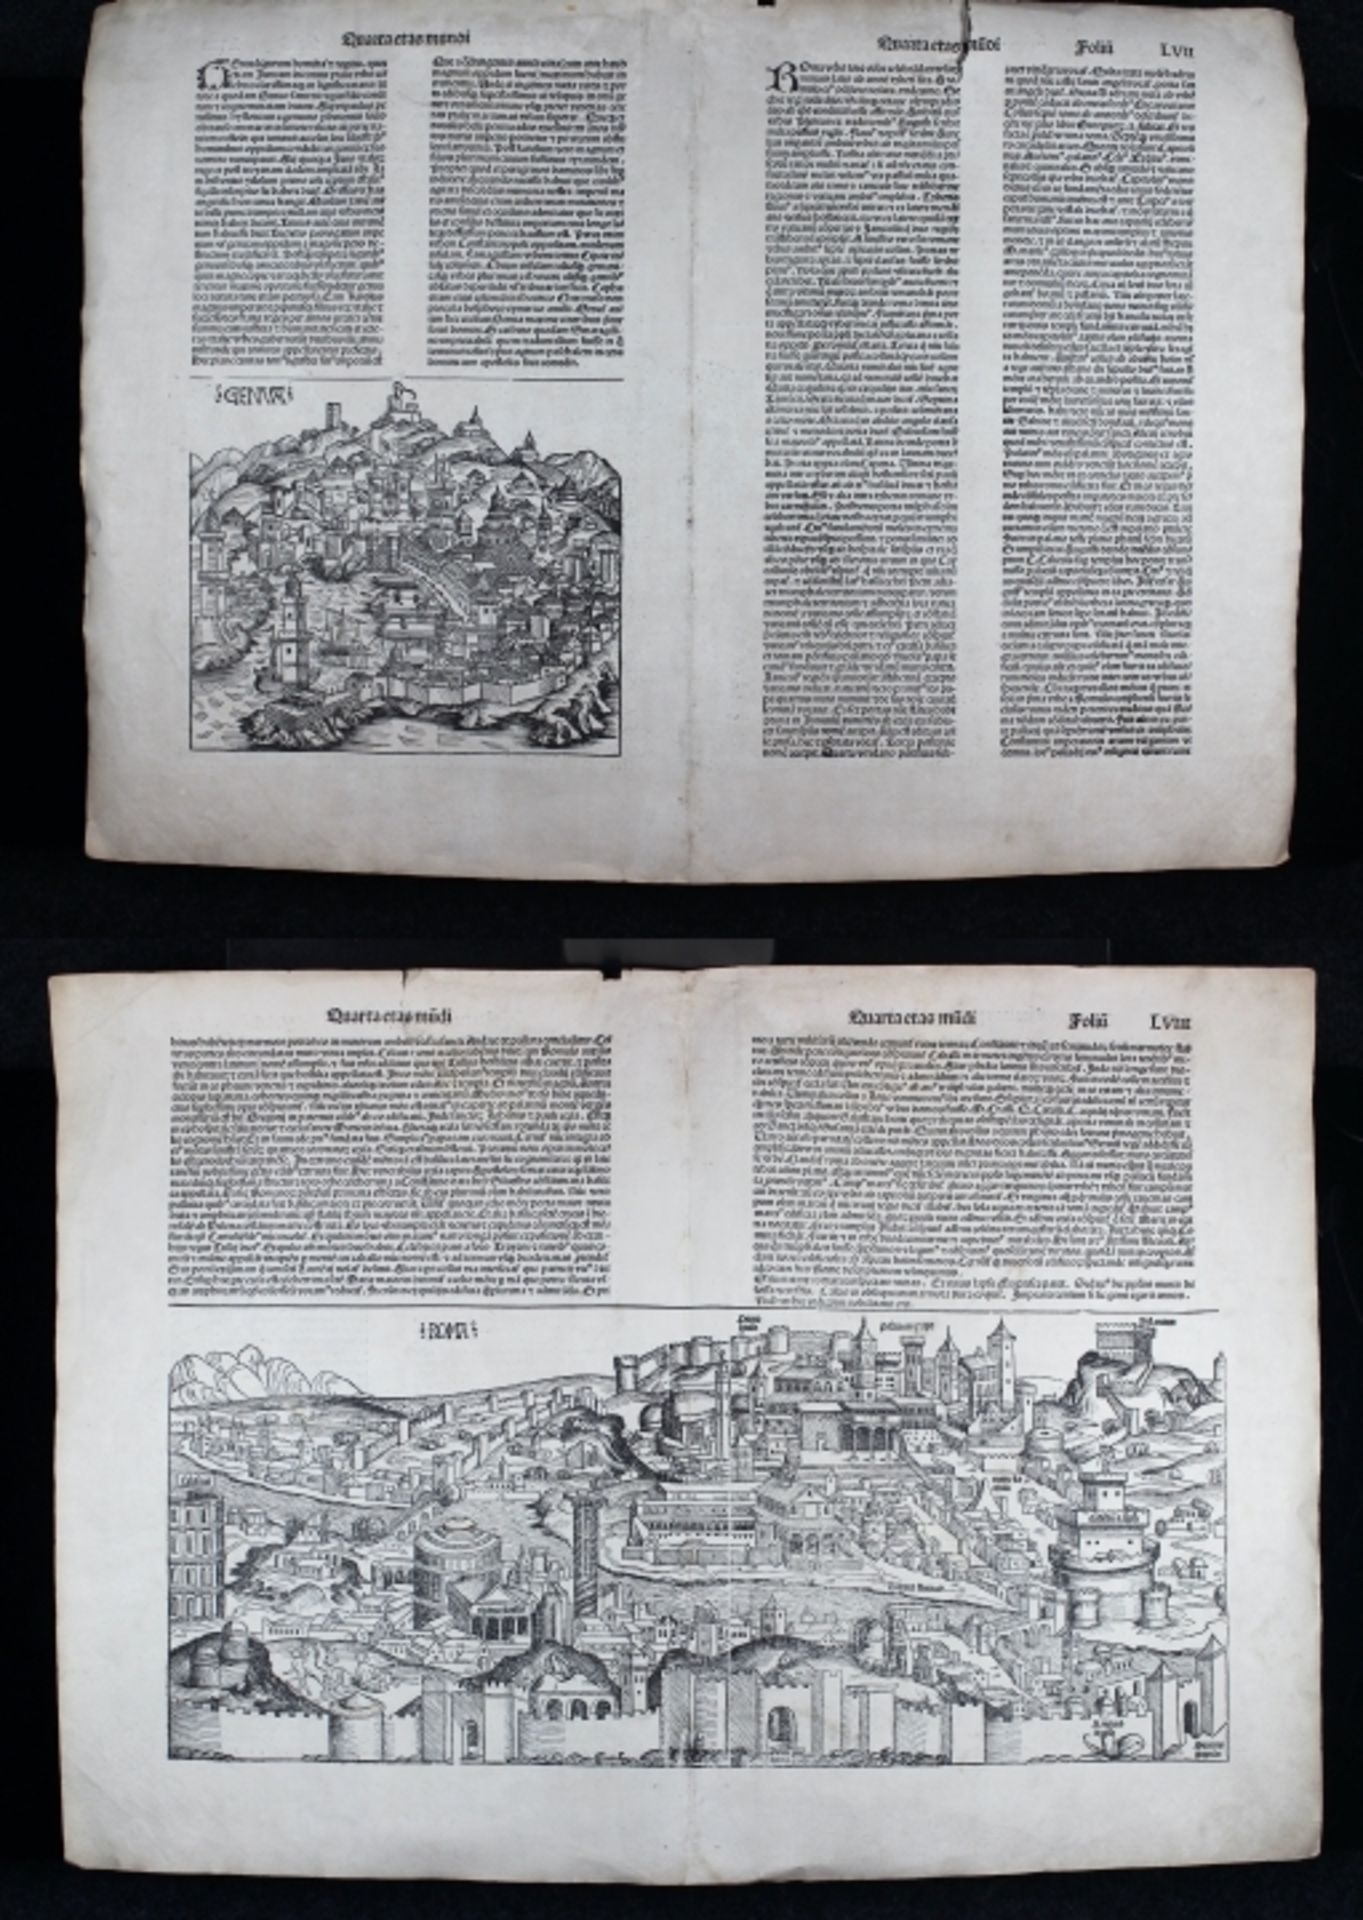 Holzschnitt - Hartmann Schedel (1440 Nürnberg 1514) "Rom", die Schedelsche Weltchronik erschien